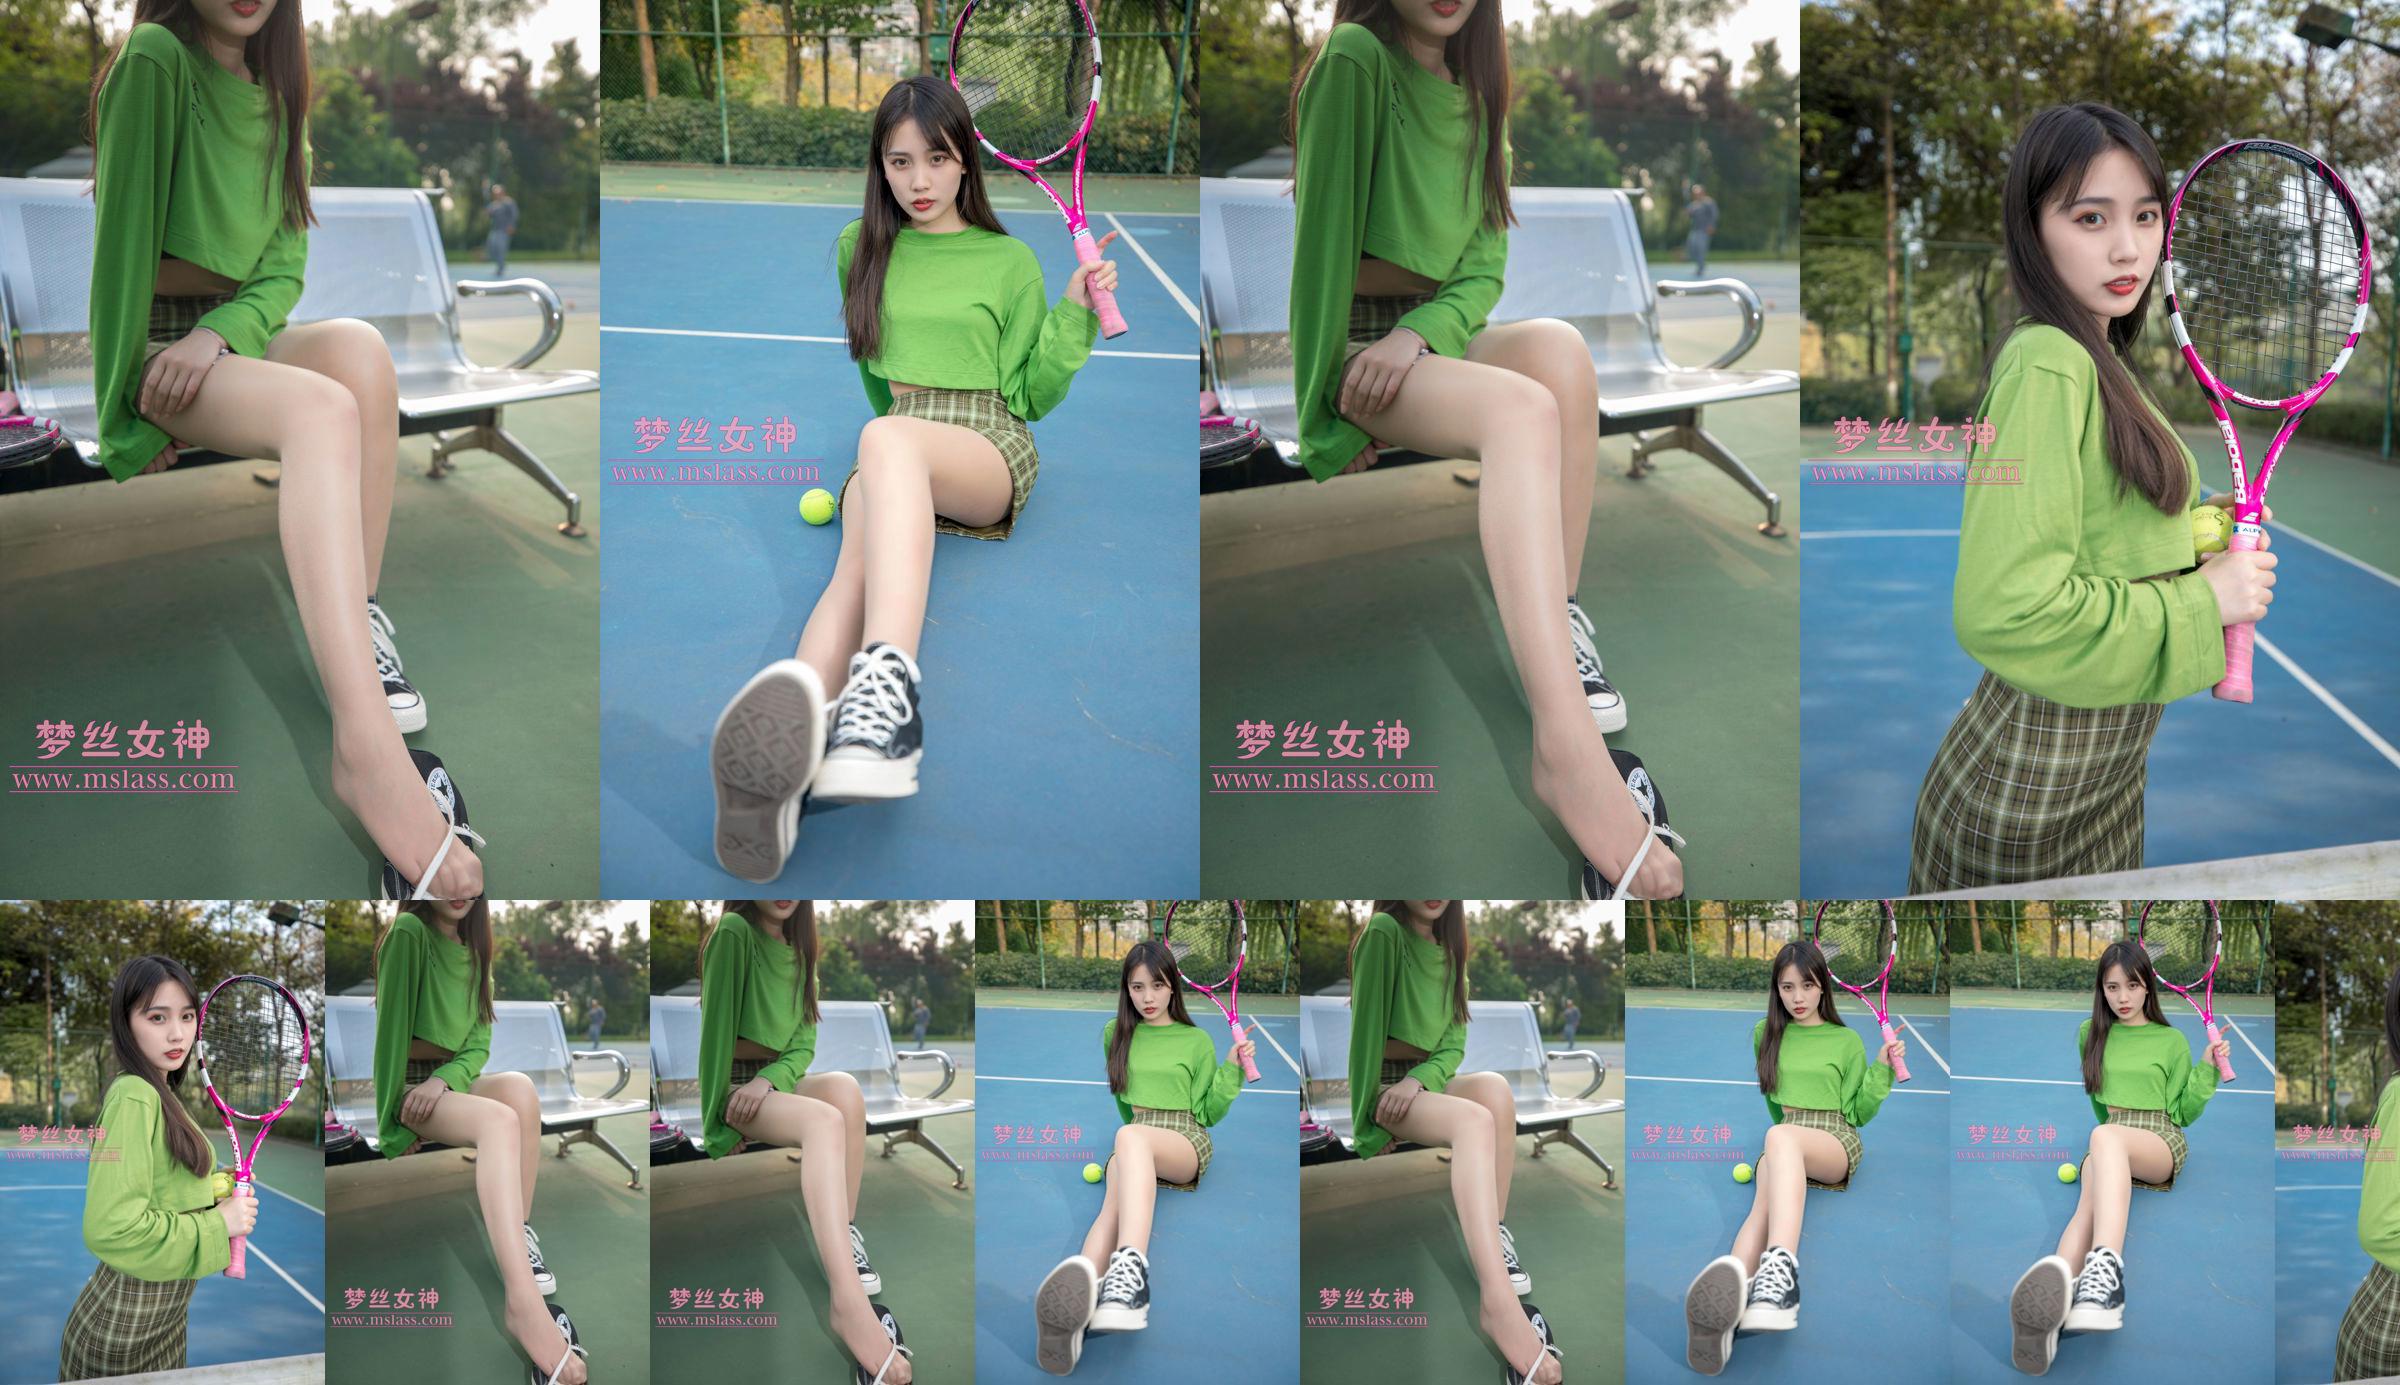 [เทพธิดาแห่งความฝัน MSLASS] Xiang Xuan Tennis Girl No.7948ad หน้า 4